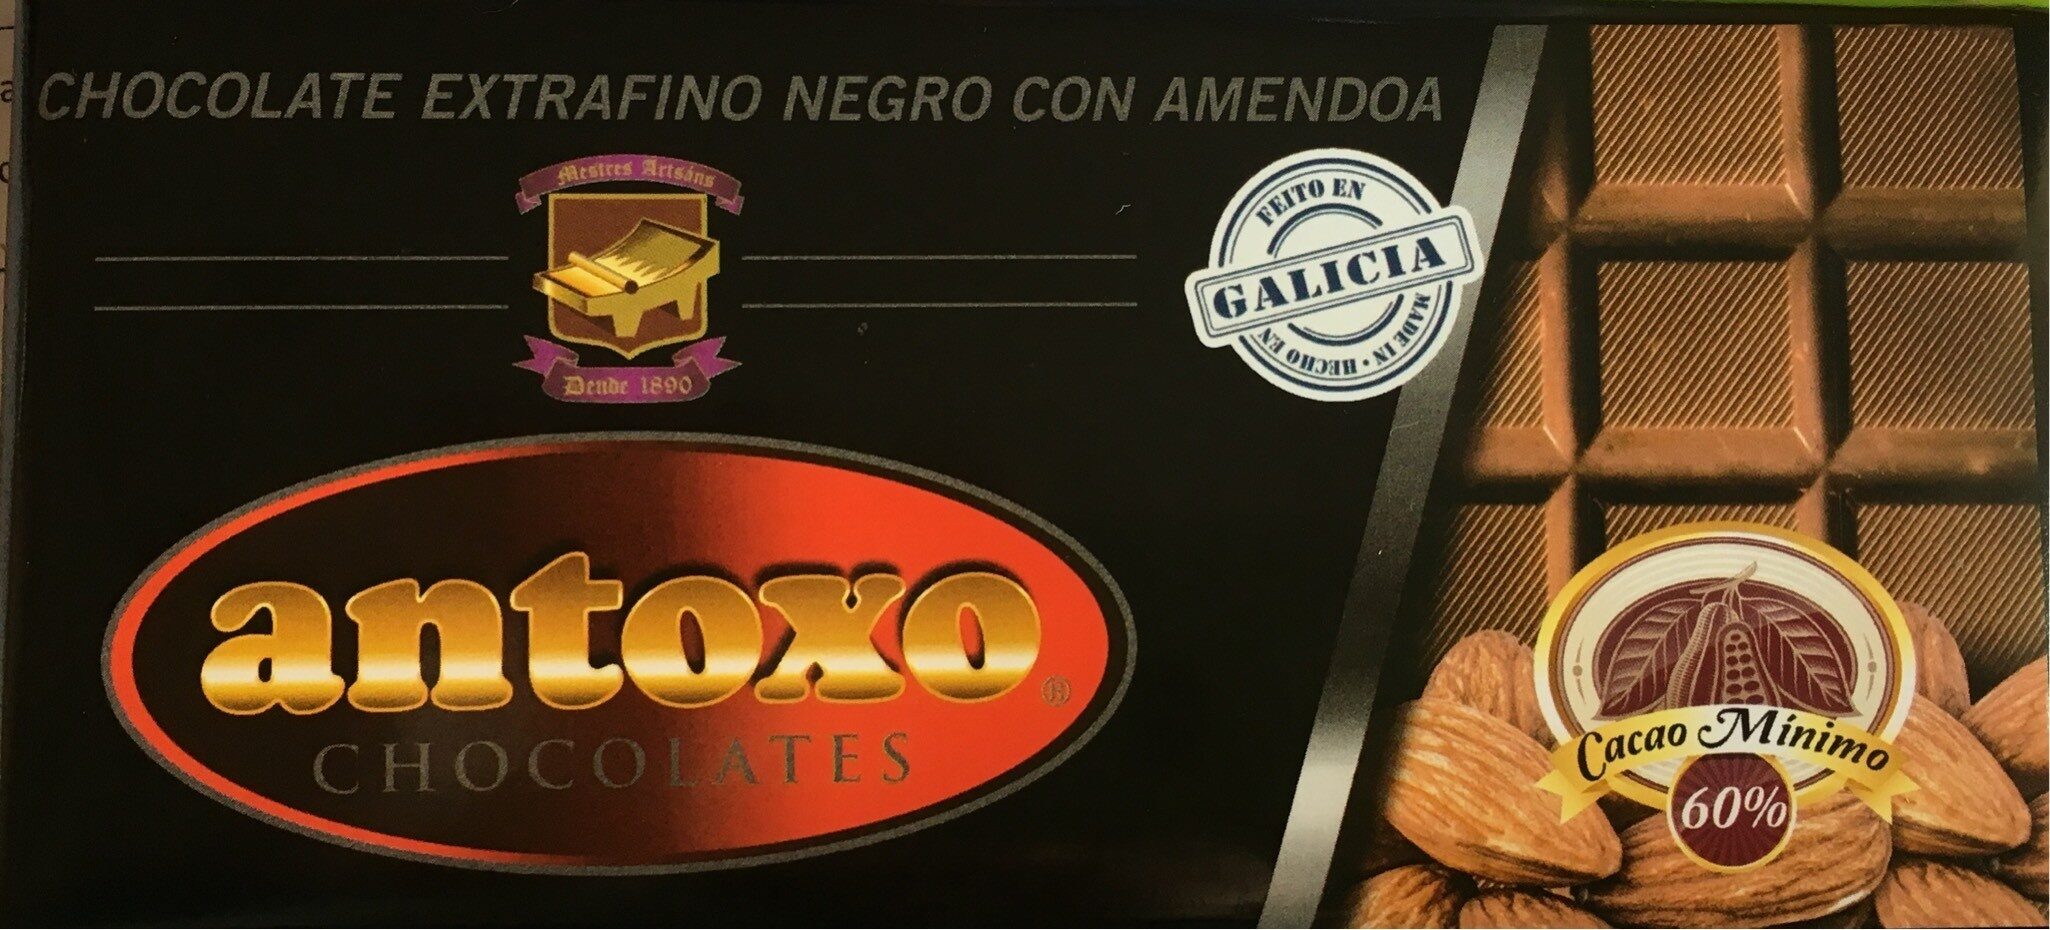 Chocolate extrafino negro con Amendoa - Producte - es